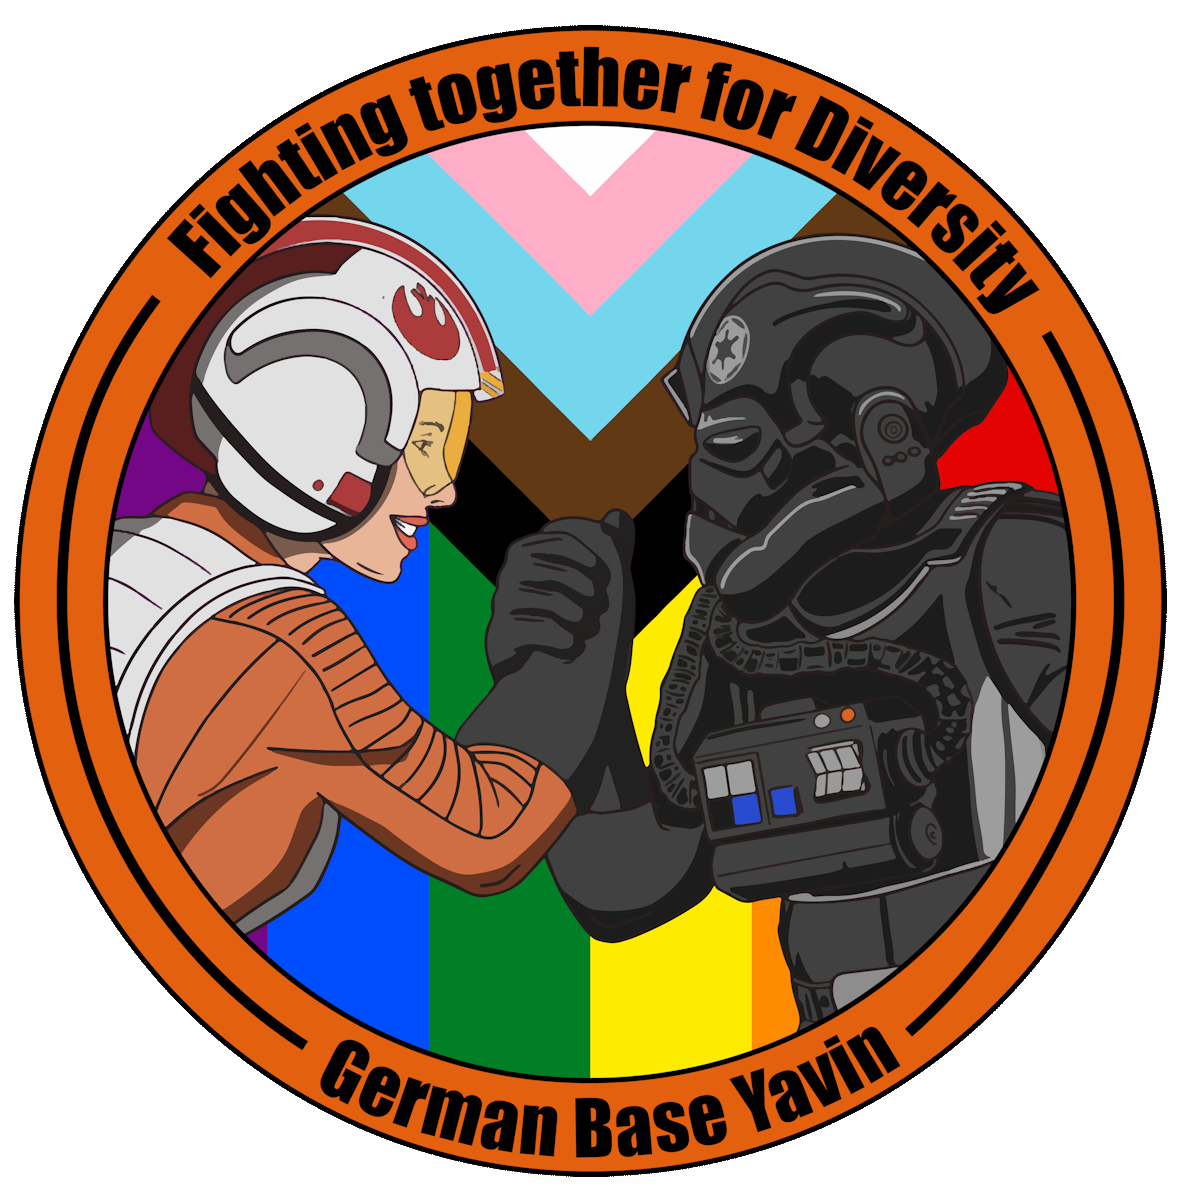 Rebel Legion German Base Yavin